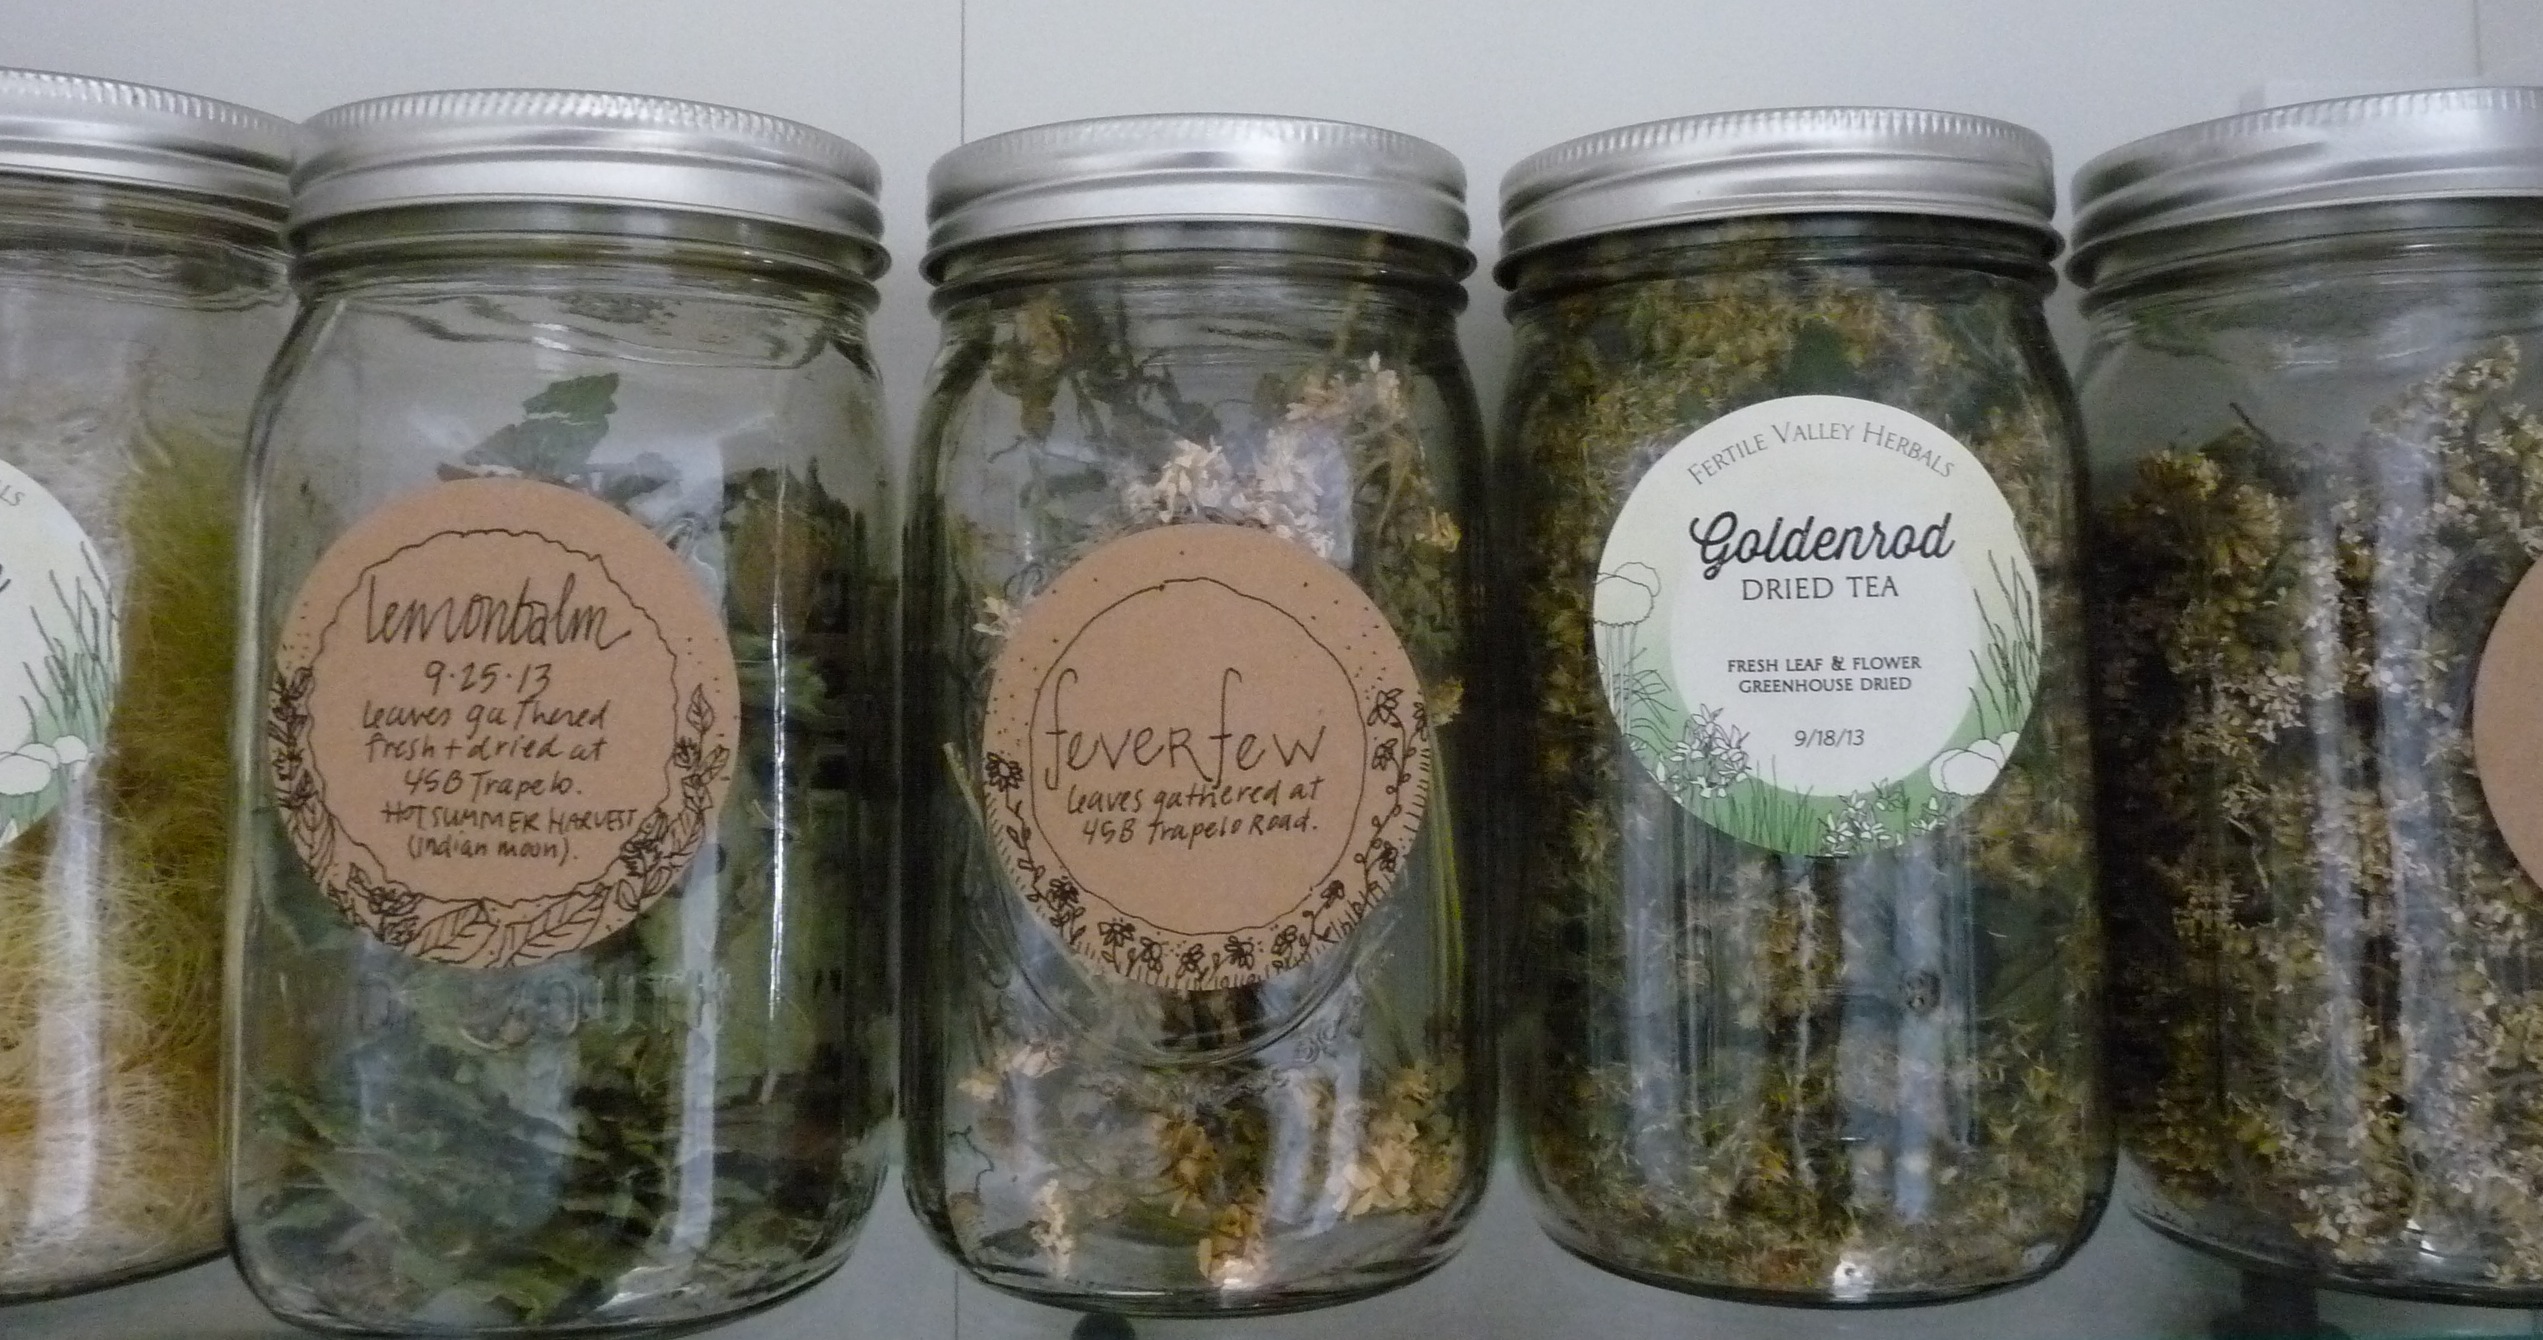 herb storage